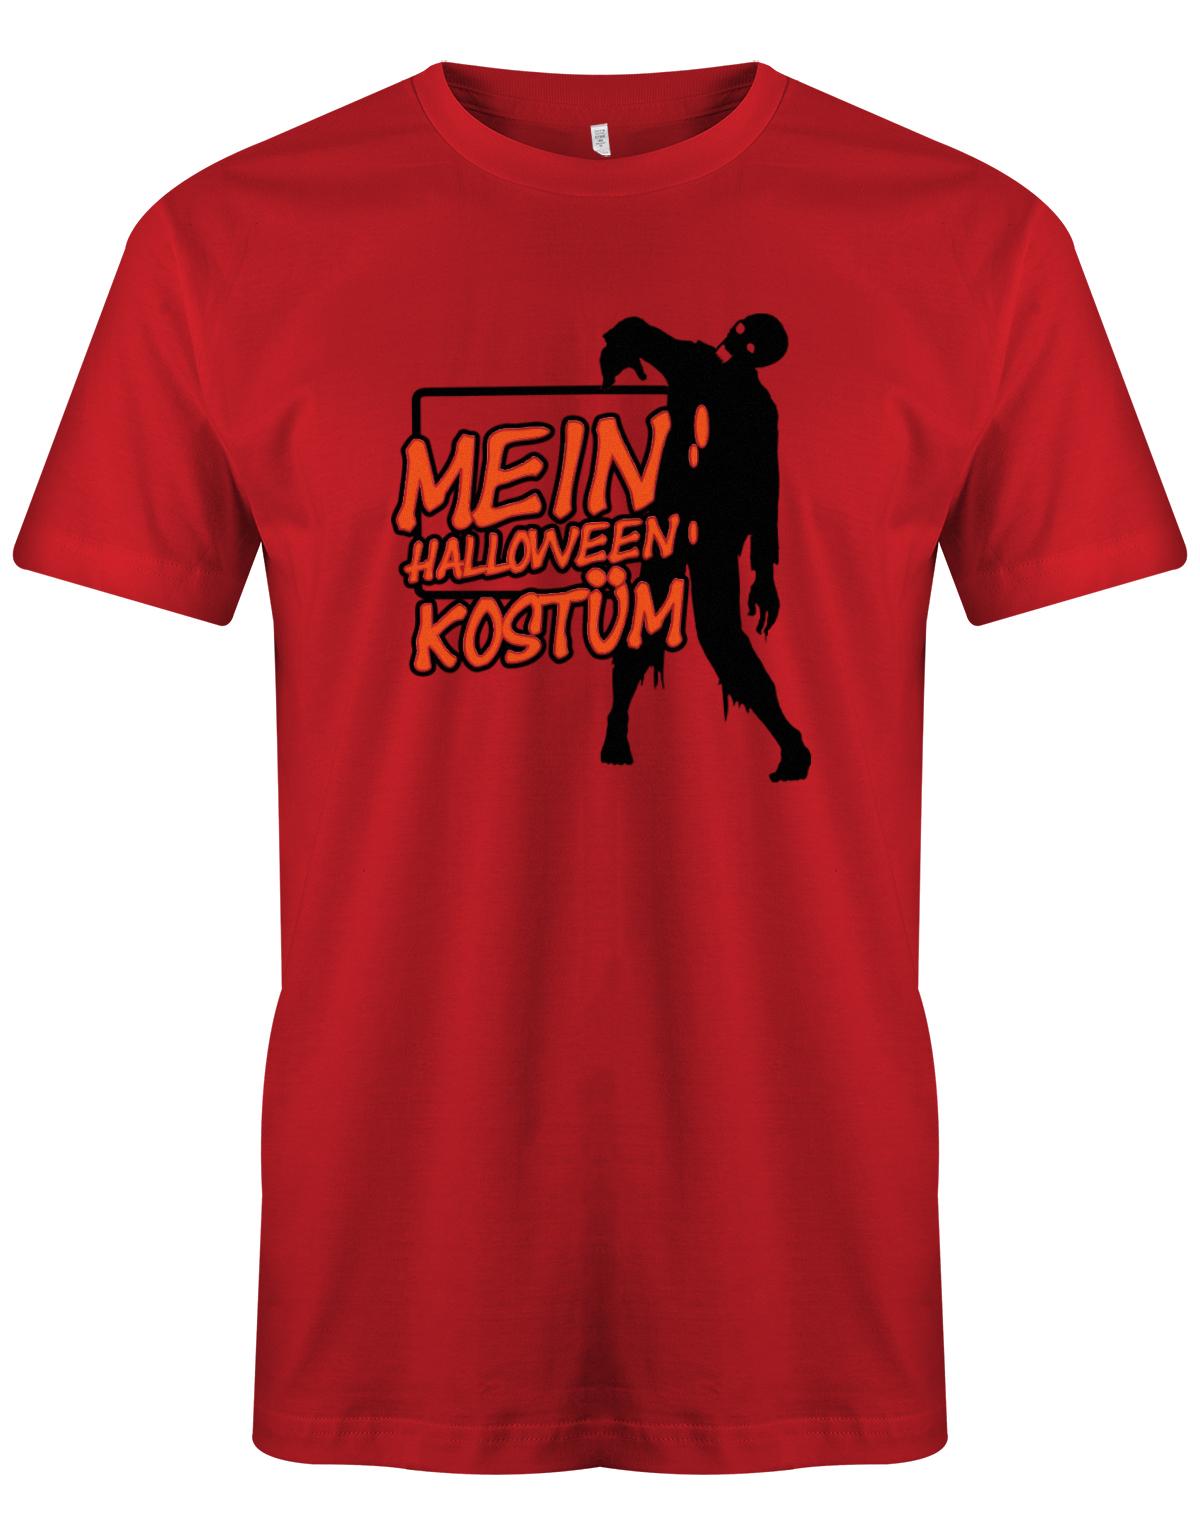 Mein-Halloween-Kost-m-Zombie-Herren-Shirt-Rot